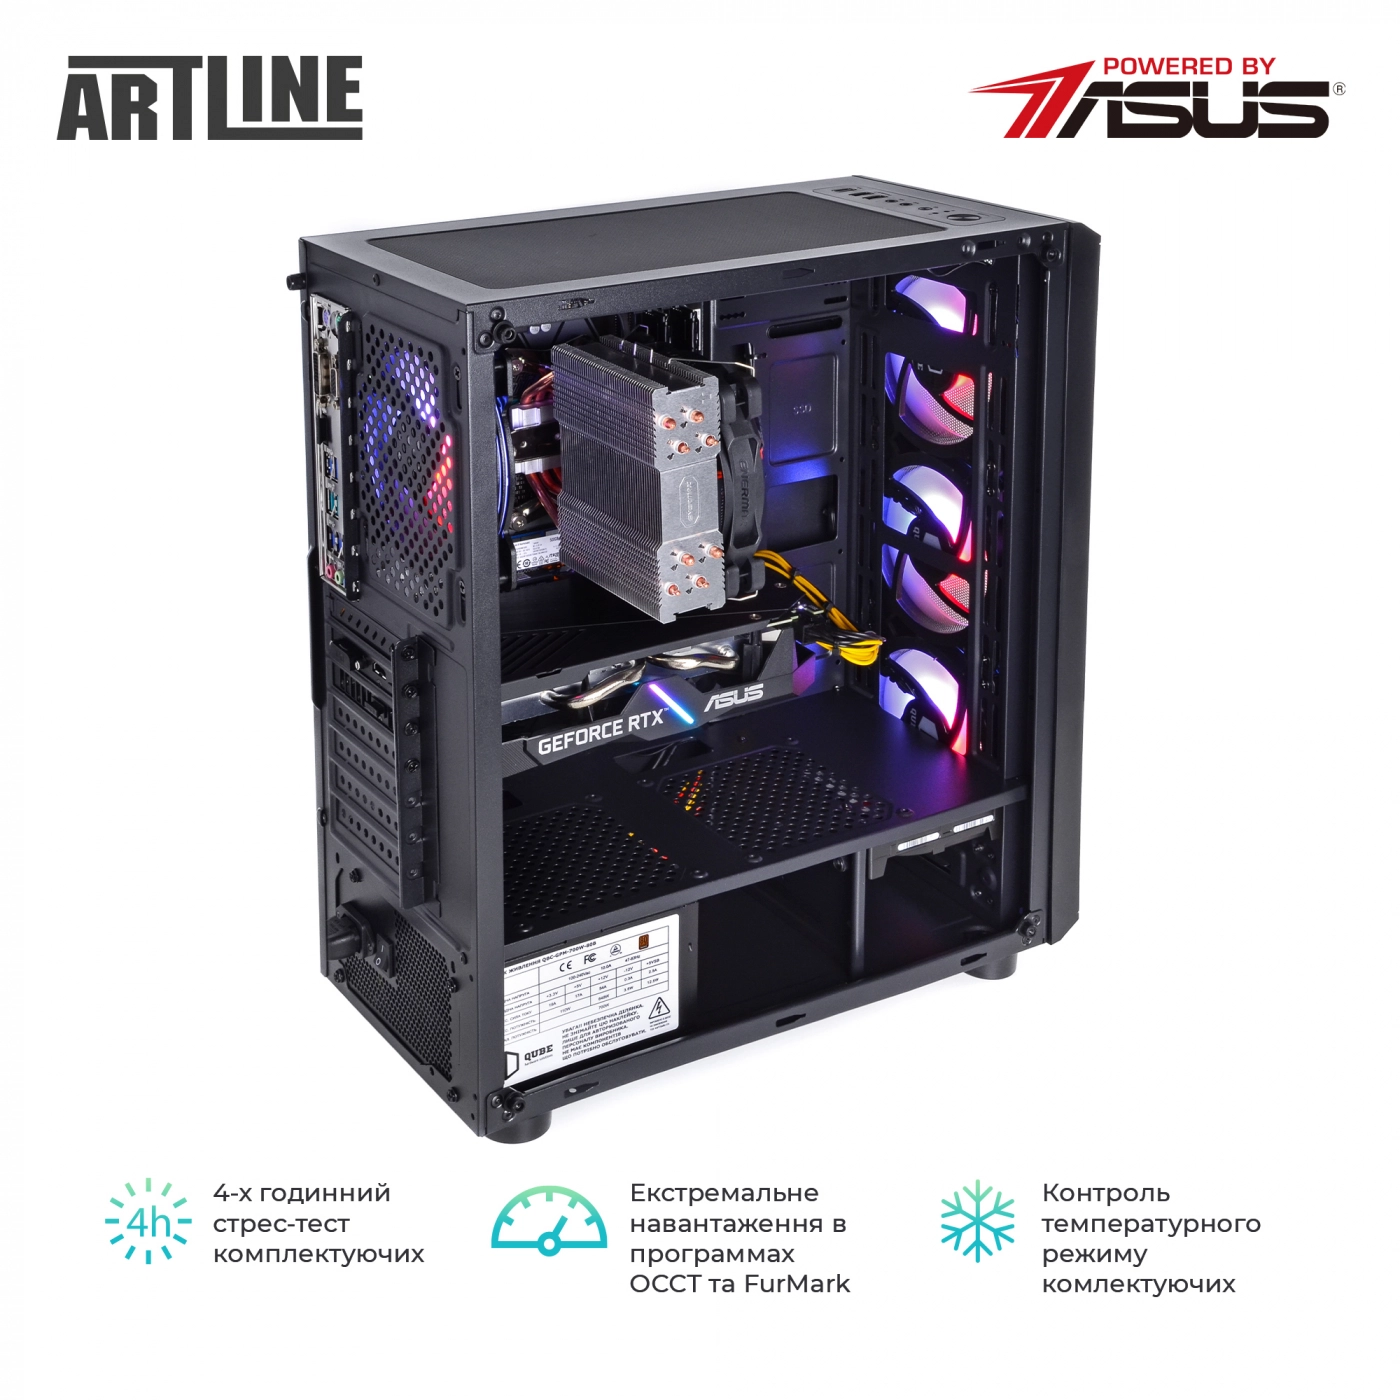 Купить Компьютер ARTLINE Gaming X77v46 - фото 10